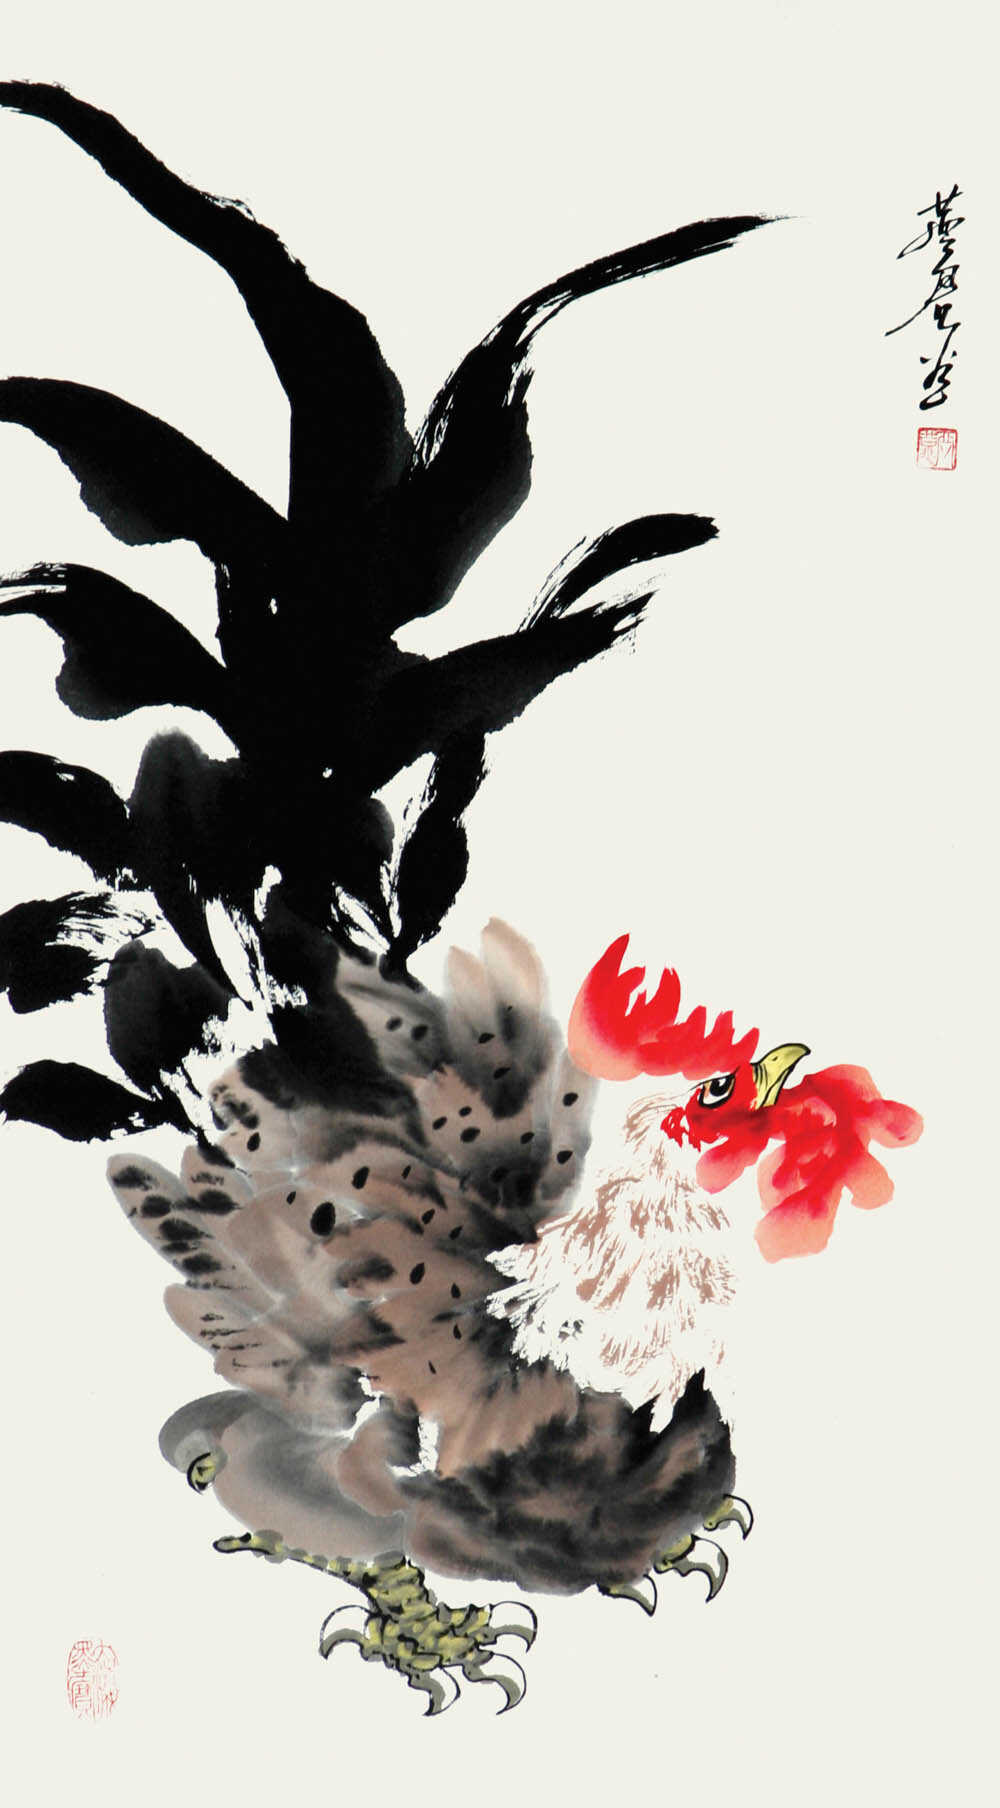 白燕君-雄鸡百态系列-31页-三尺